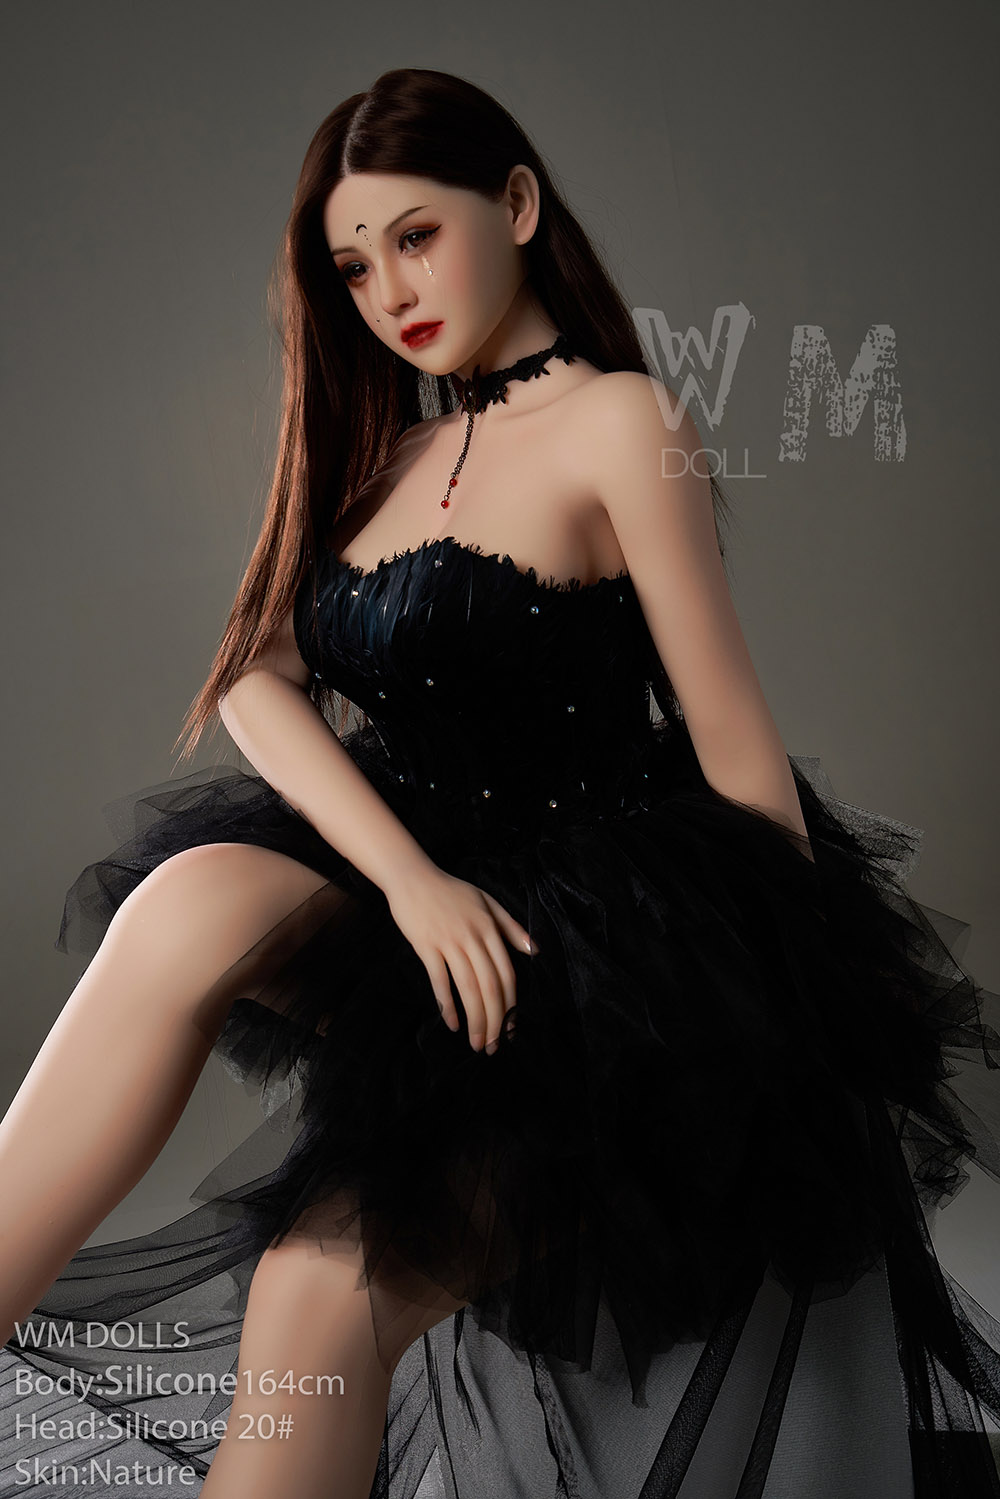  lolita girl love doll princess in black dress